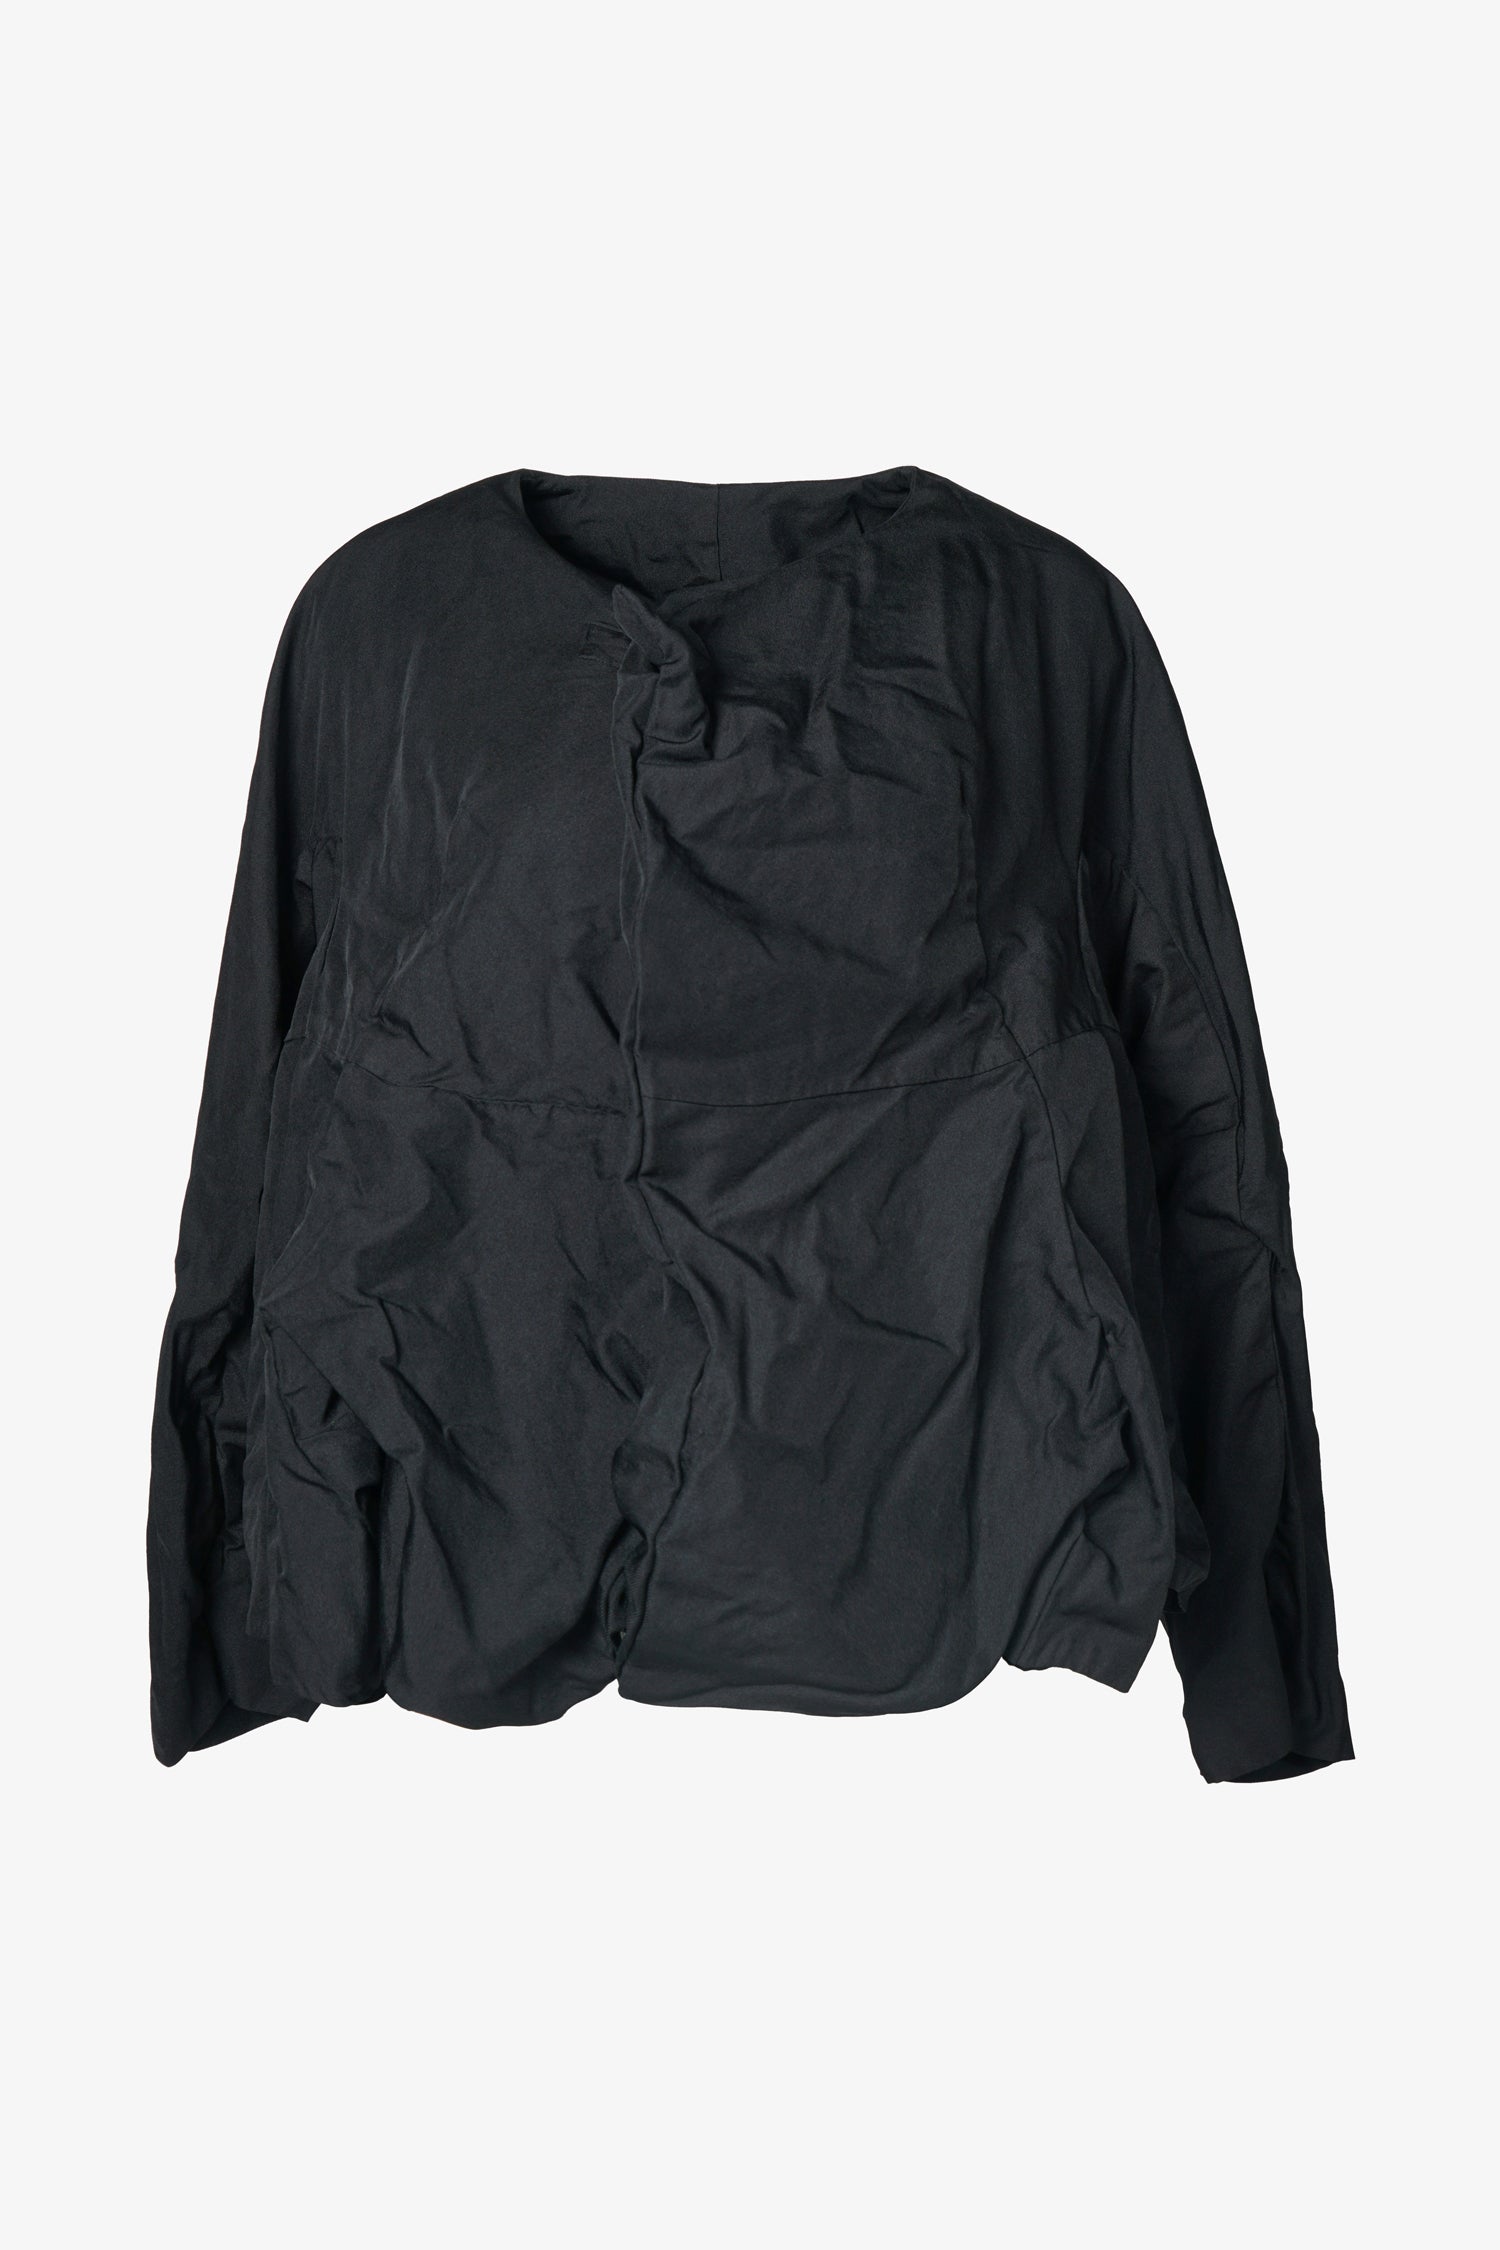 Selectshop FRAME - COMME DES GARÇONS Button-Less Dyed Jacket Outerwear Dubai